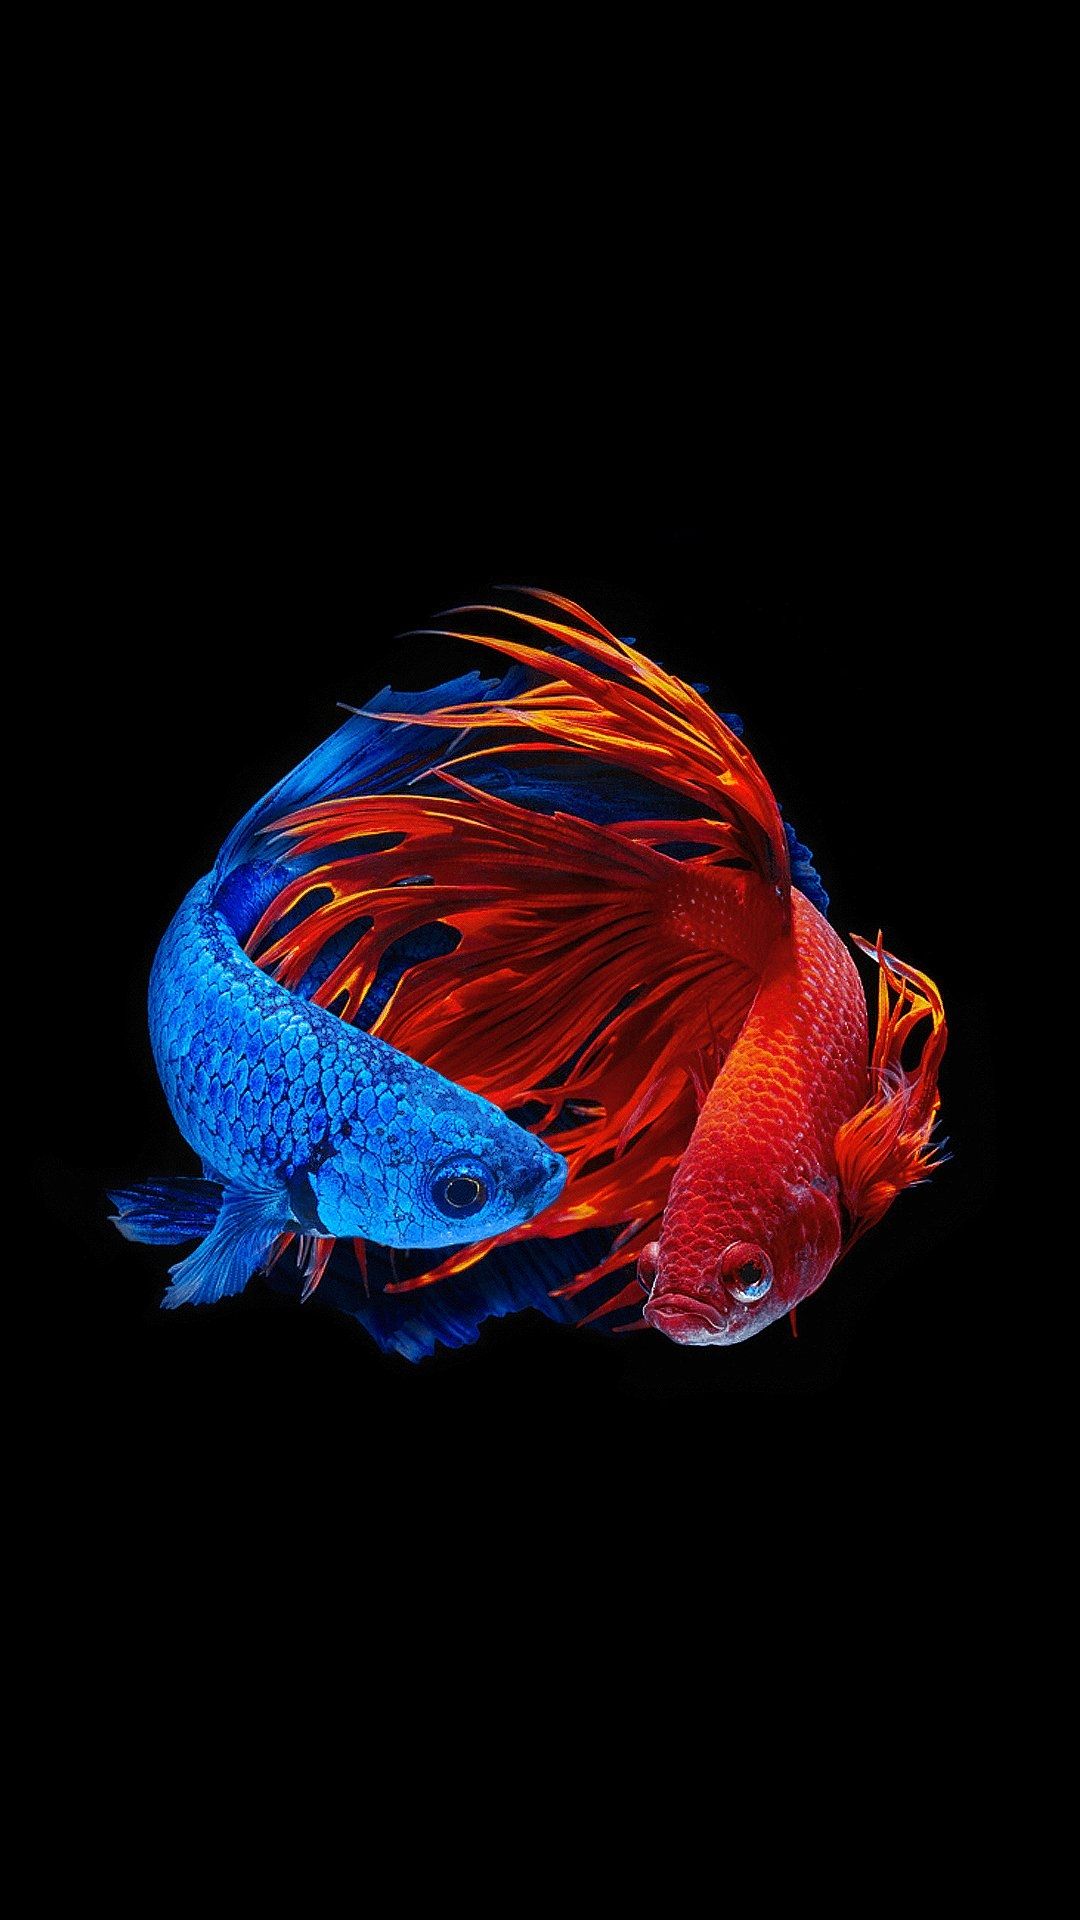 아이폰 5s 바탕 화면,푸른,강청색,짙은 청록색,심해 물고기,해양 생물학